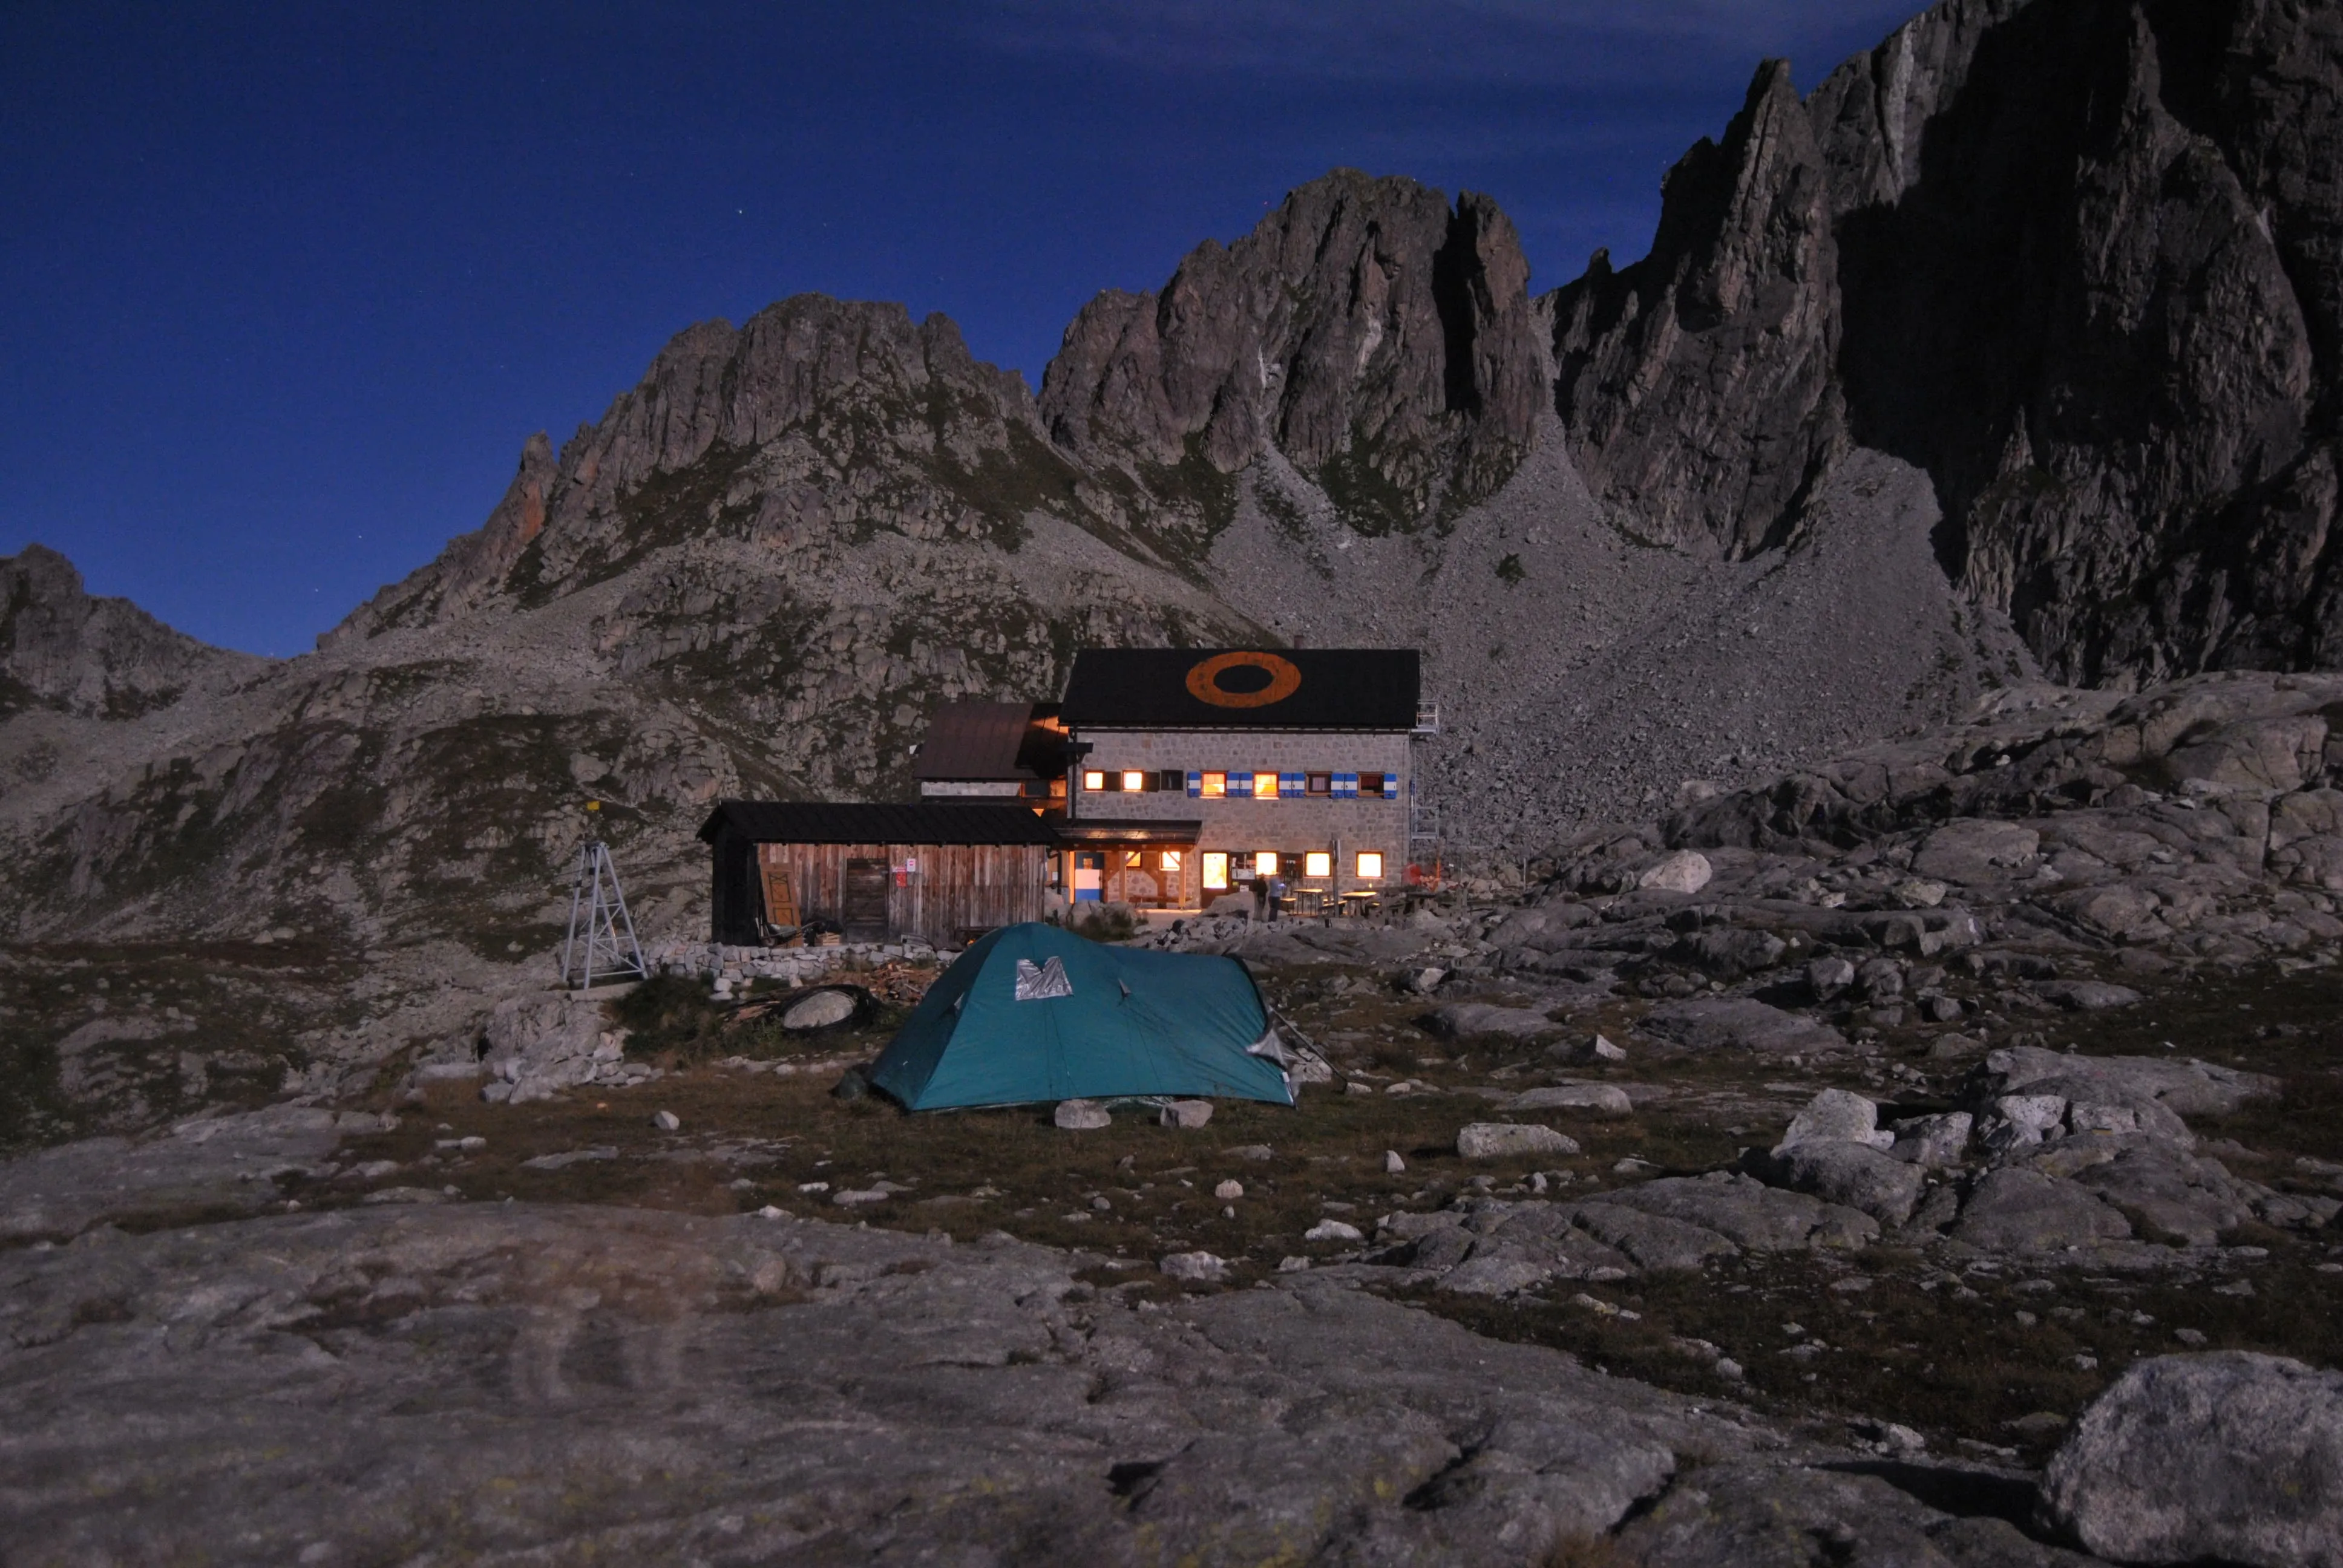 16. The Granite Dolomites: Alta Via del Granito